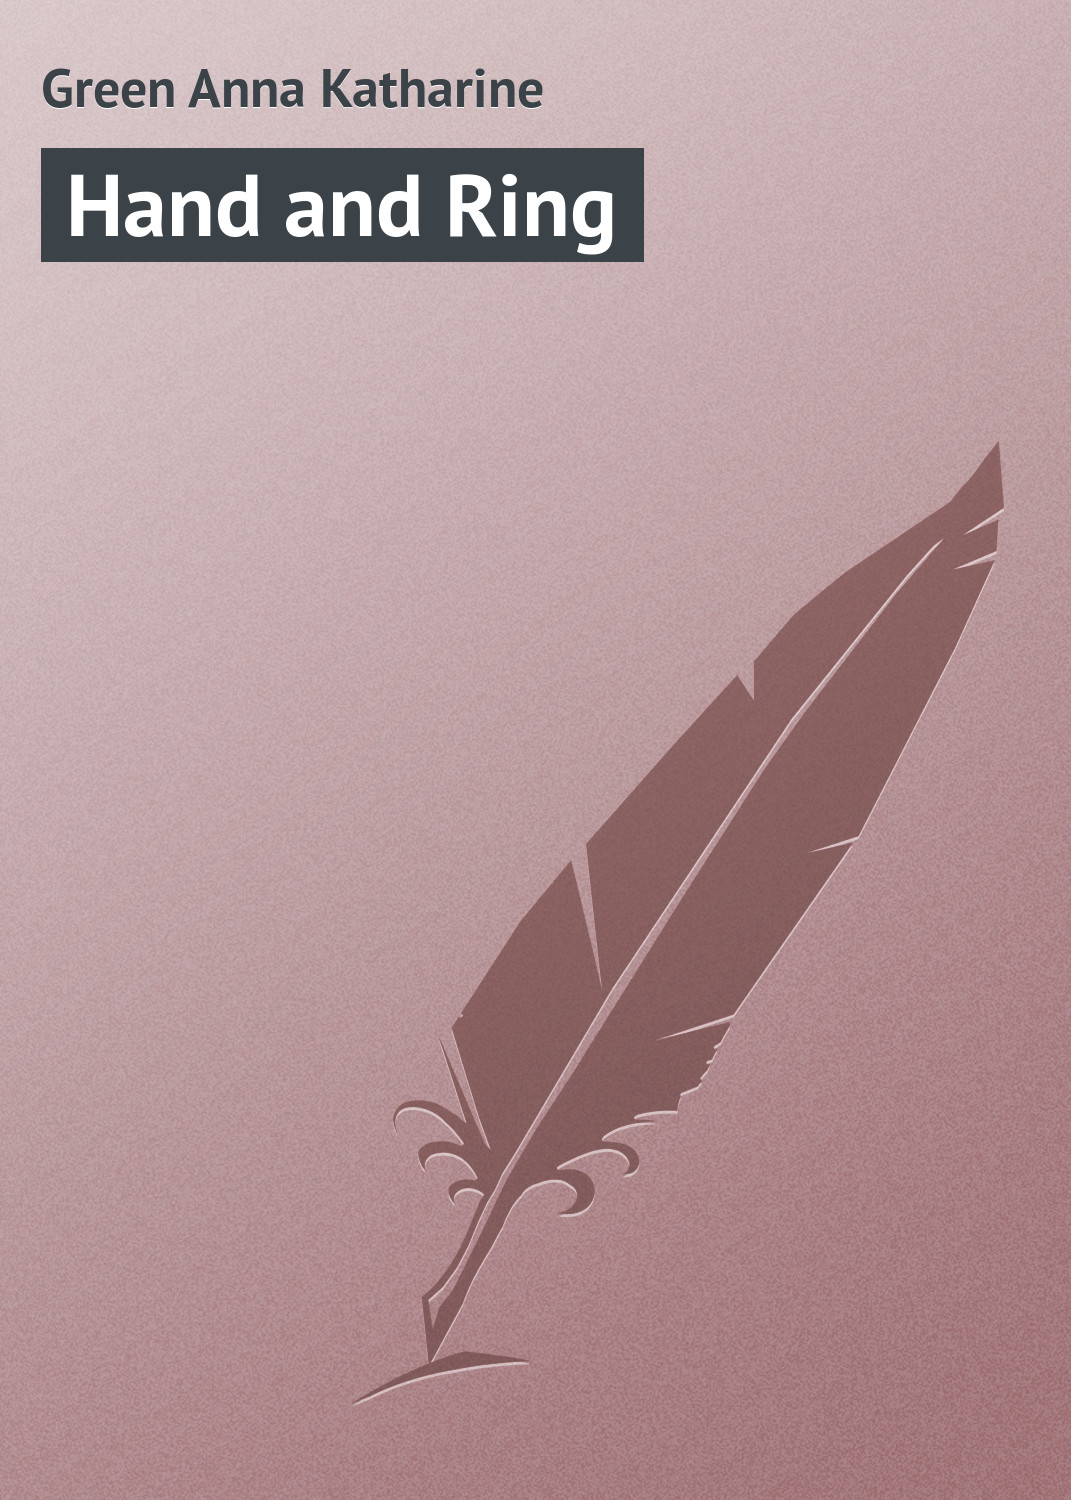 Книга Hand and Ring из серии , созданная Anna Green, может относится к жанру Классические детективы, Зарубежные детективы, Зарубежная классика. Стоимость электронной книги Hand and Ring с идентификатором 23157739 составляет 5.99 руб.